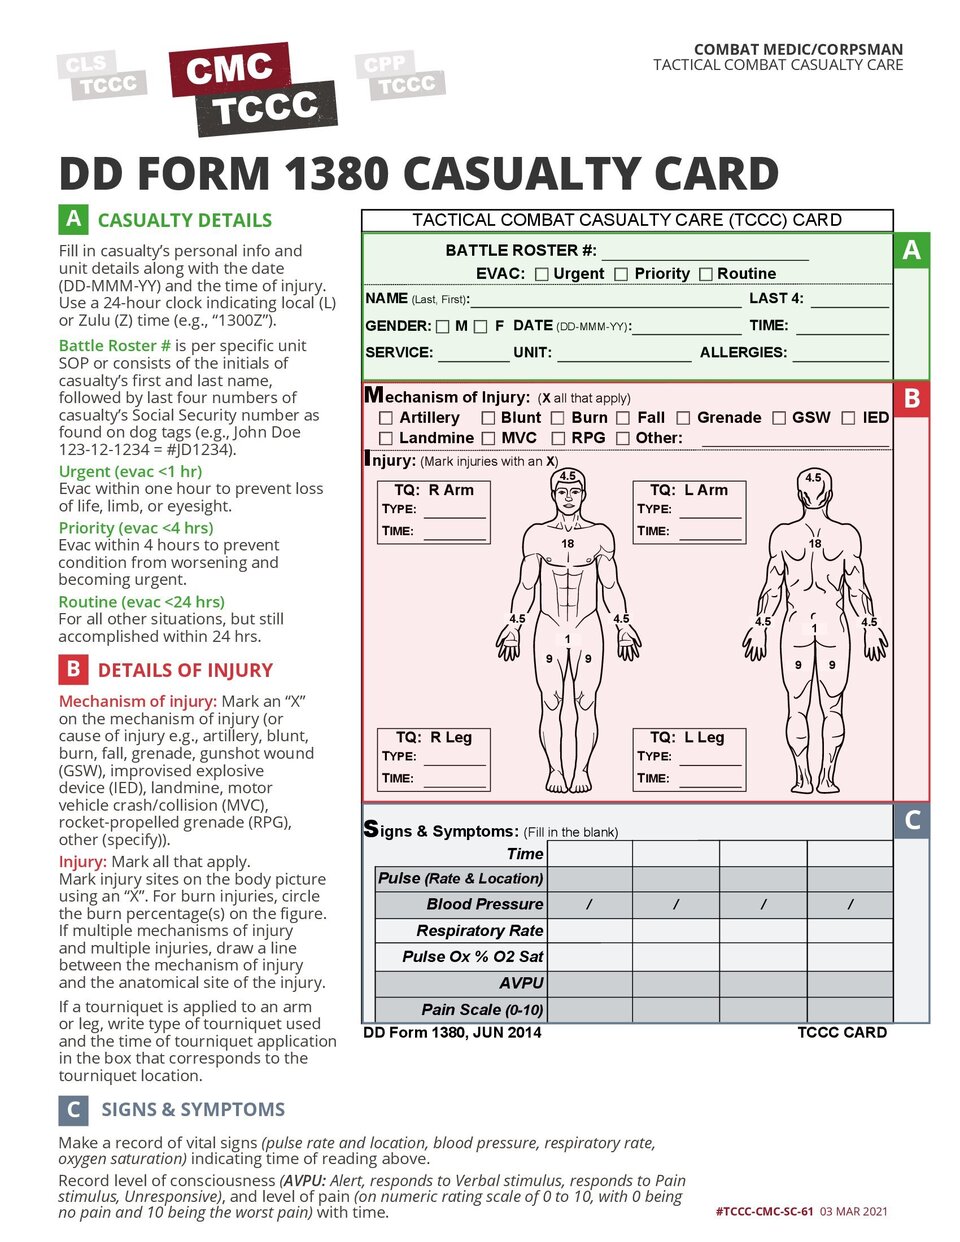 DD Form 1380 (TCCC Card)